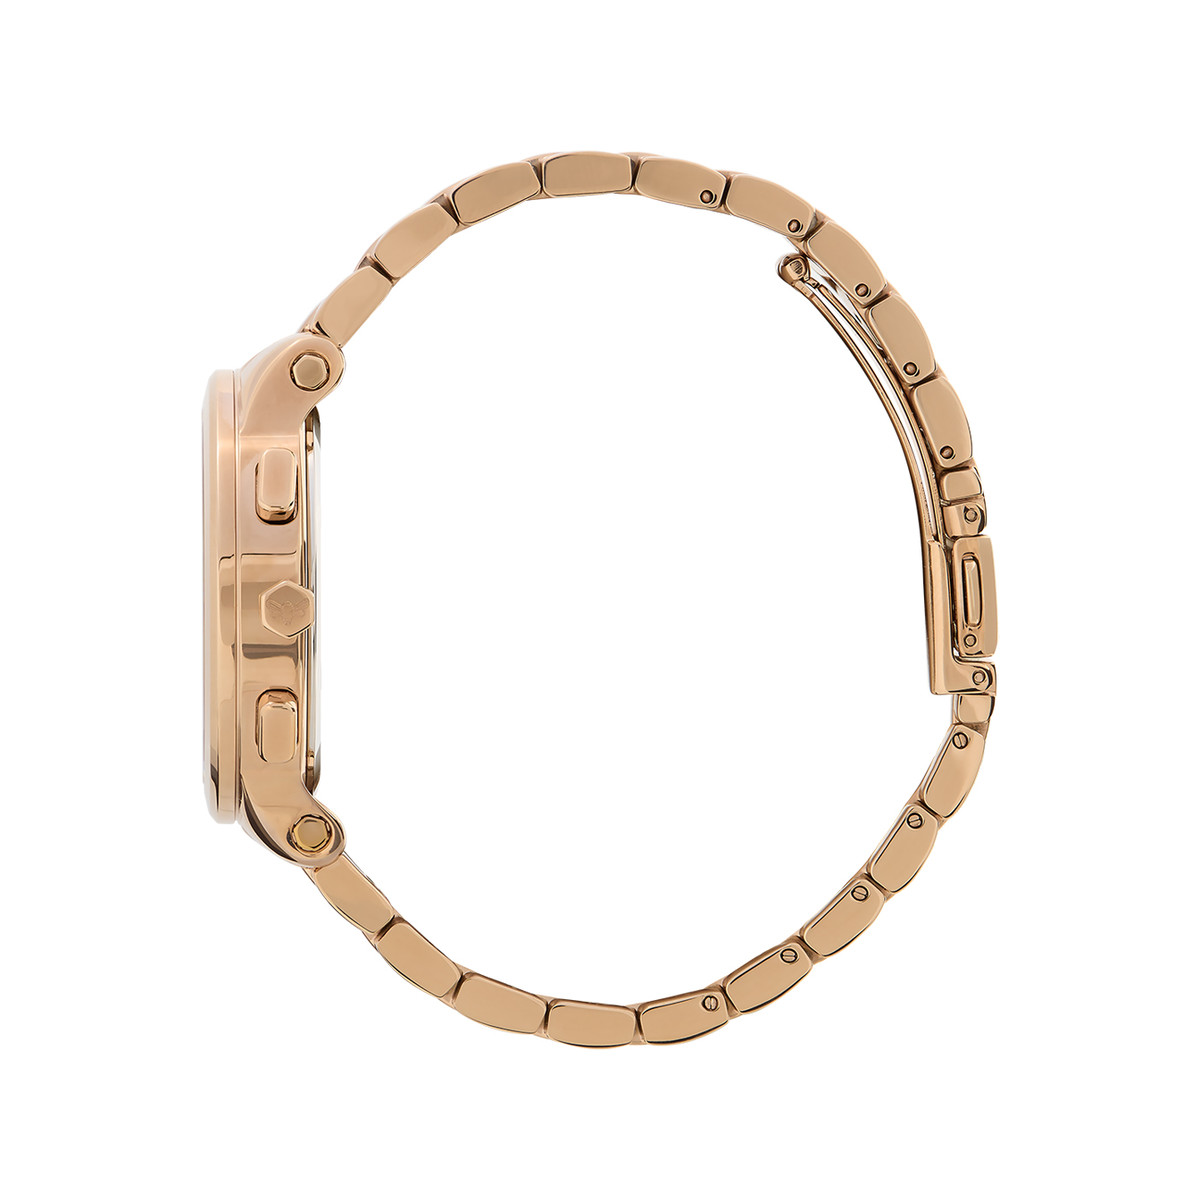 Montre OLIVIA BURTON multi function femme analogique, bracelet acier doré rose - vue 2